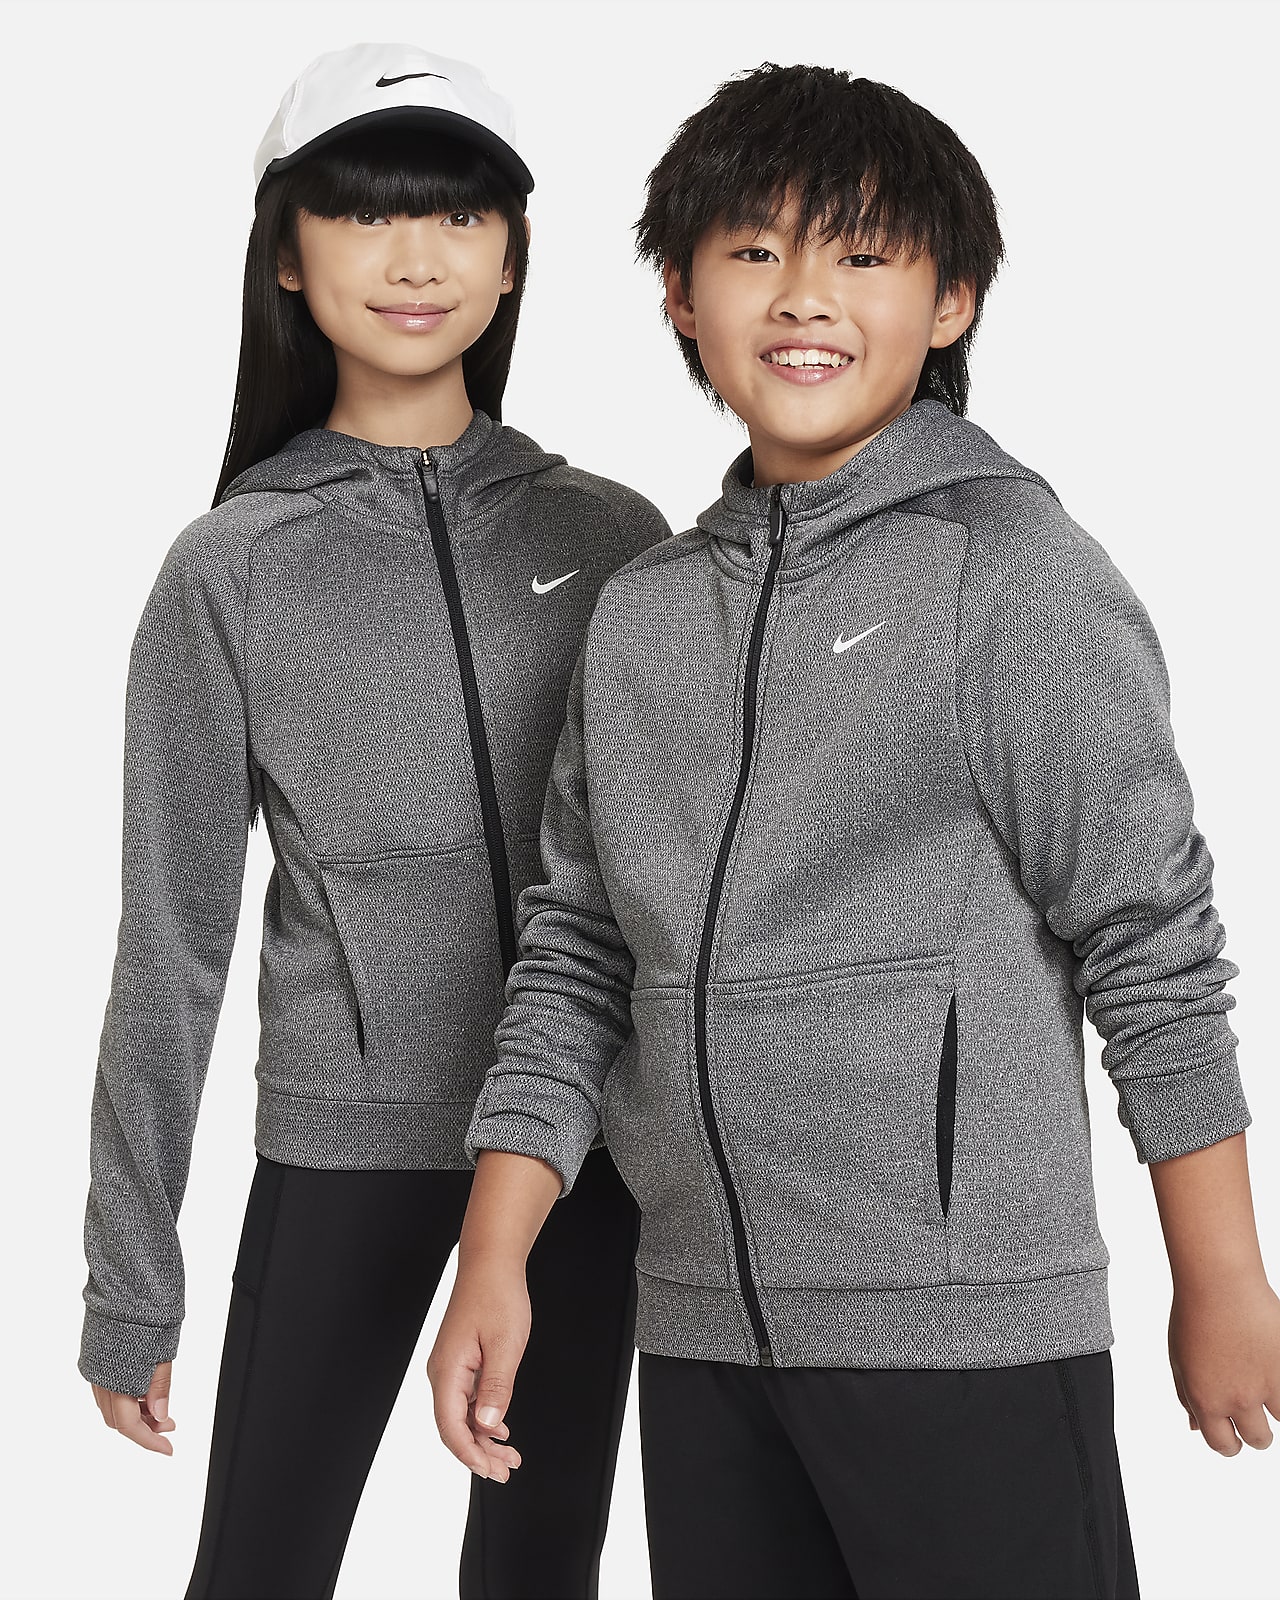 Μπλούζα με κουκούλα και φερμουάρ σε όλο το μήκος Nike Therma-FIT για μεγάλα παιδιά